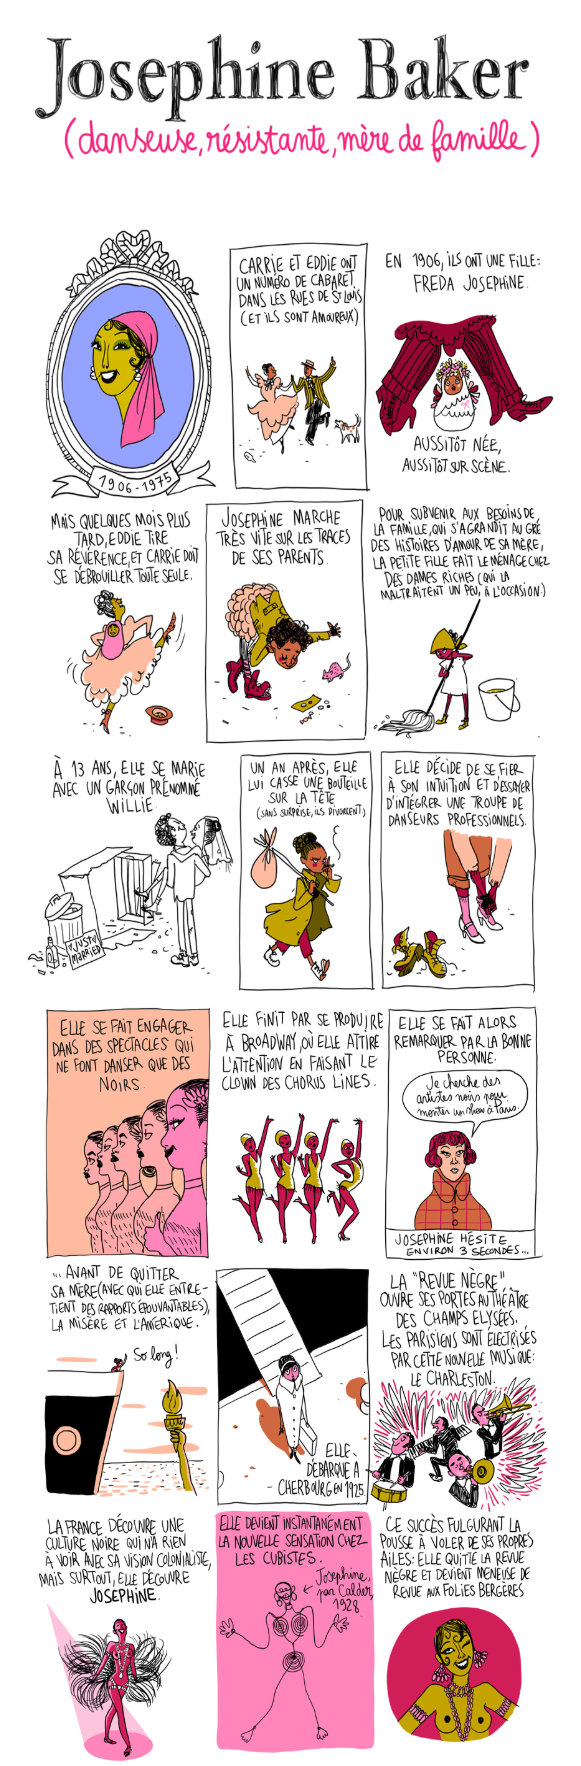 Extrait sur Joséphine Baker, de la bande dessinée Culottées de Pénélope Bagieu